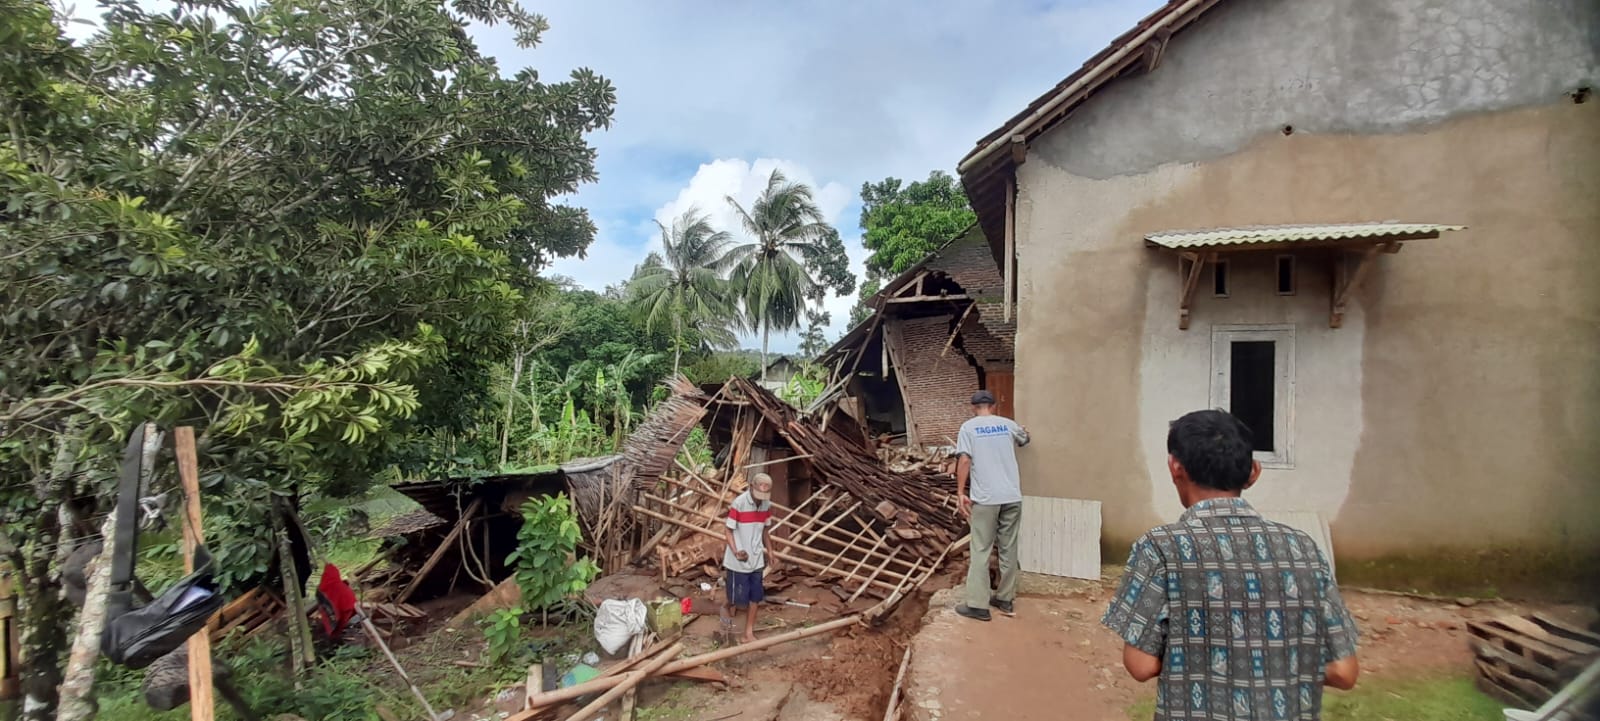 Foto kondisi rumah warga yang ambruk akibat tergerus longsor (Katakita.co)